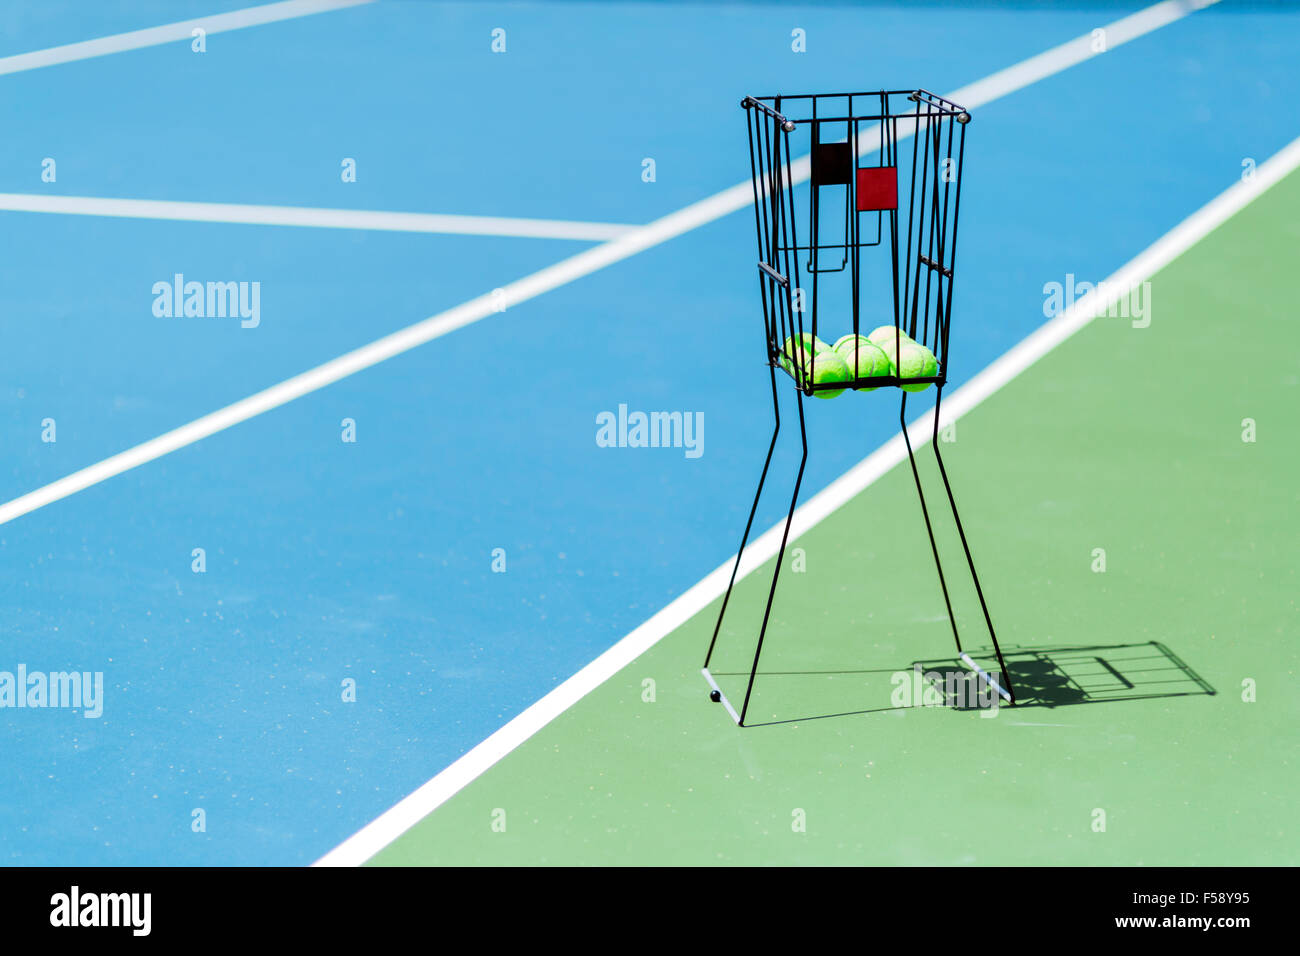 Schöner Tennisplatz mit einem Ball Korb und Tennis Kugeln drin Stockfoto